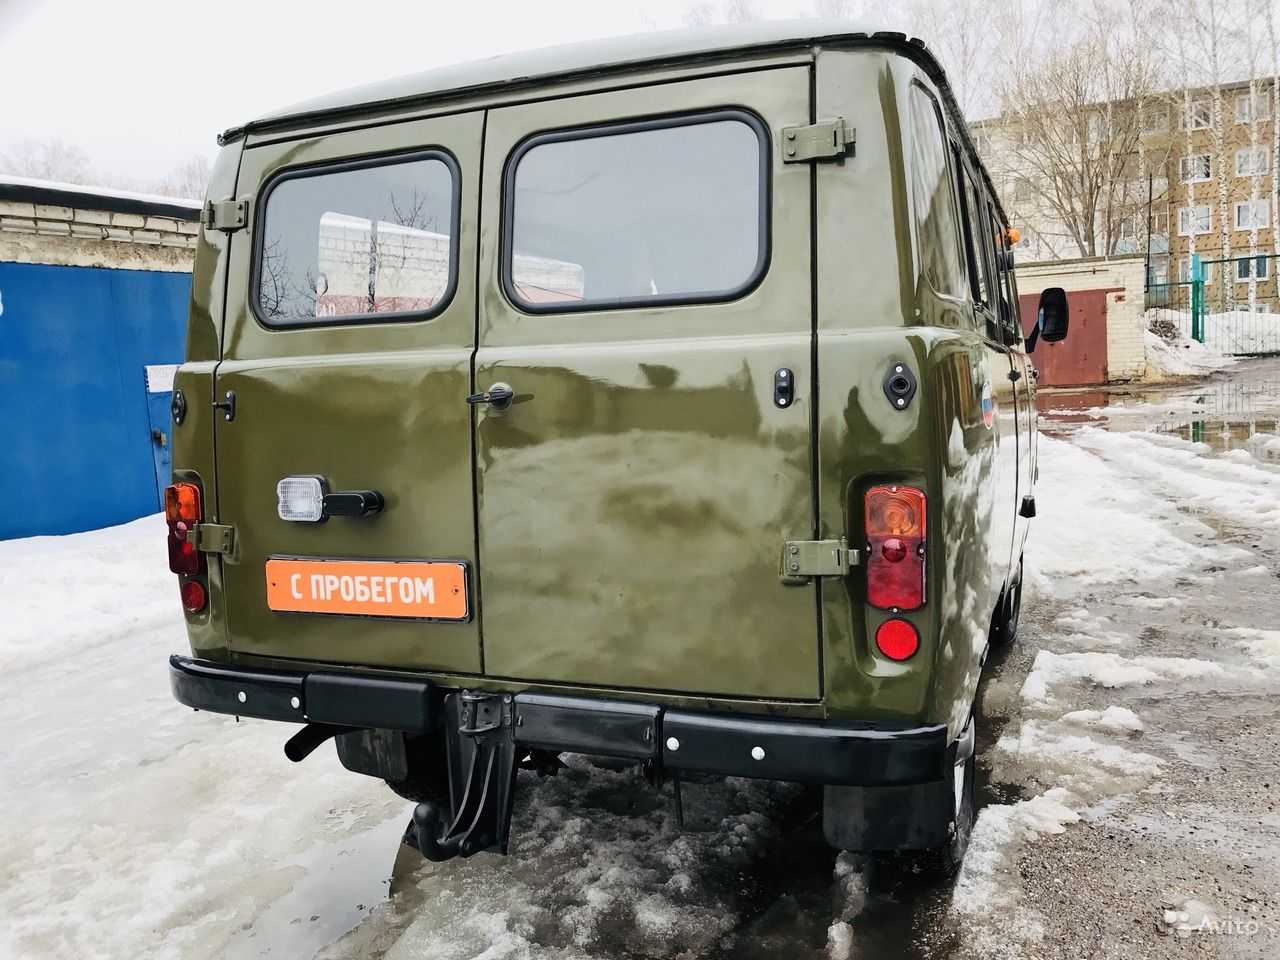 Уаз-39625 грузопассажирский фургон-микроавтобус в москве — продажа и лизинг